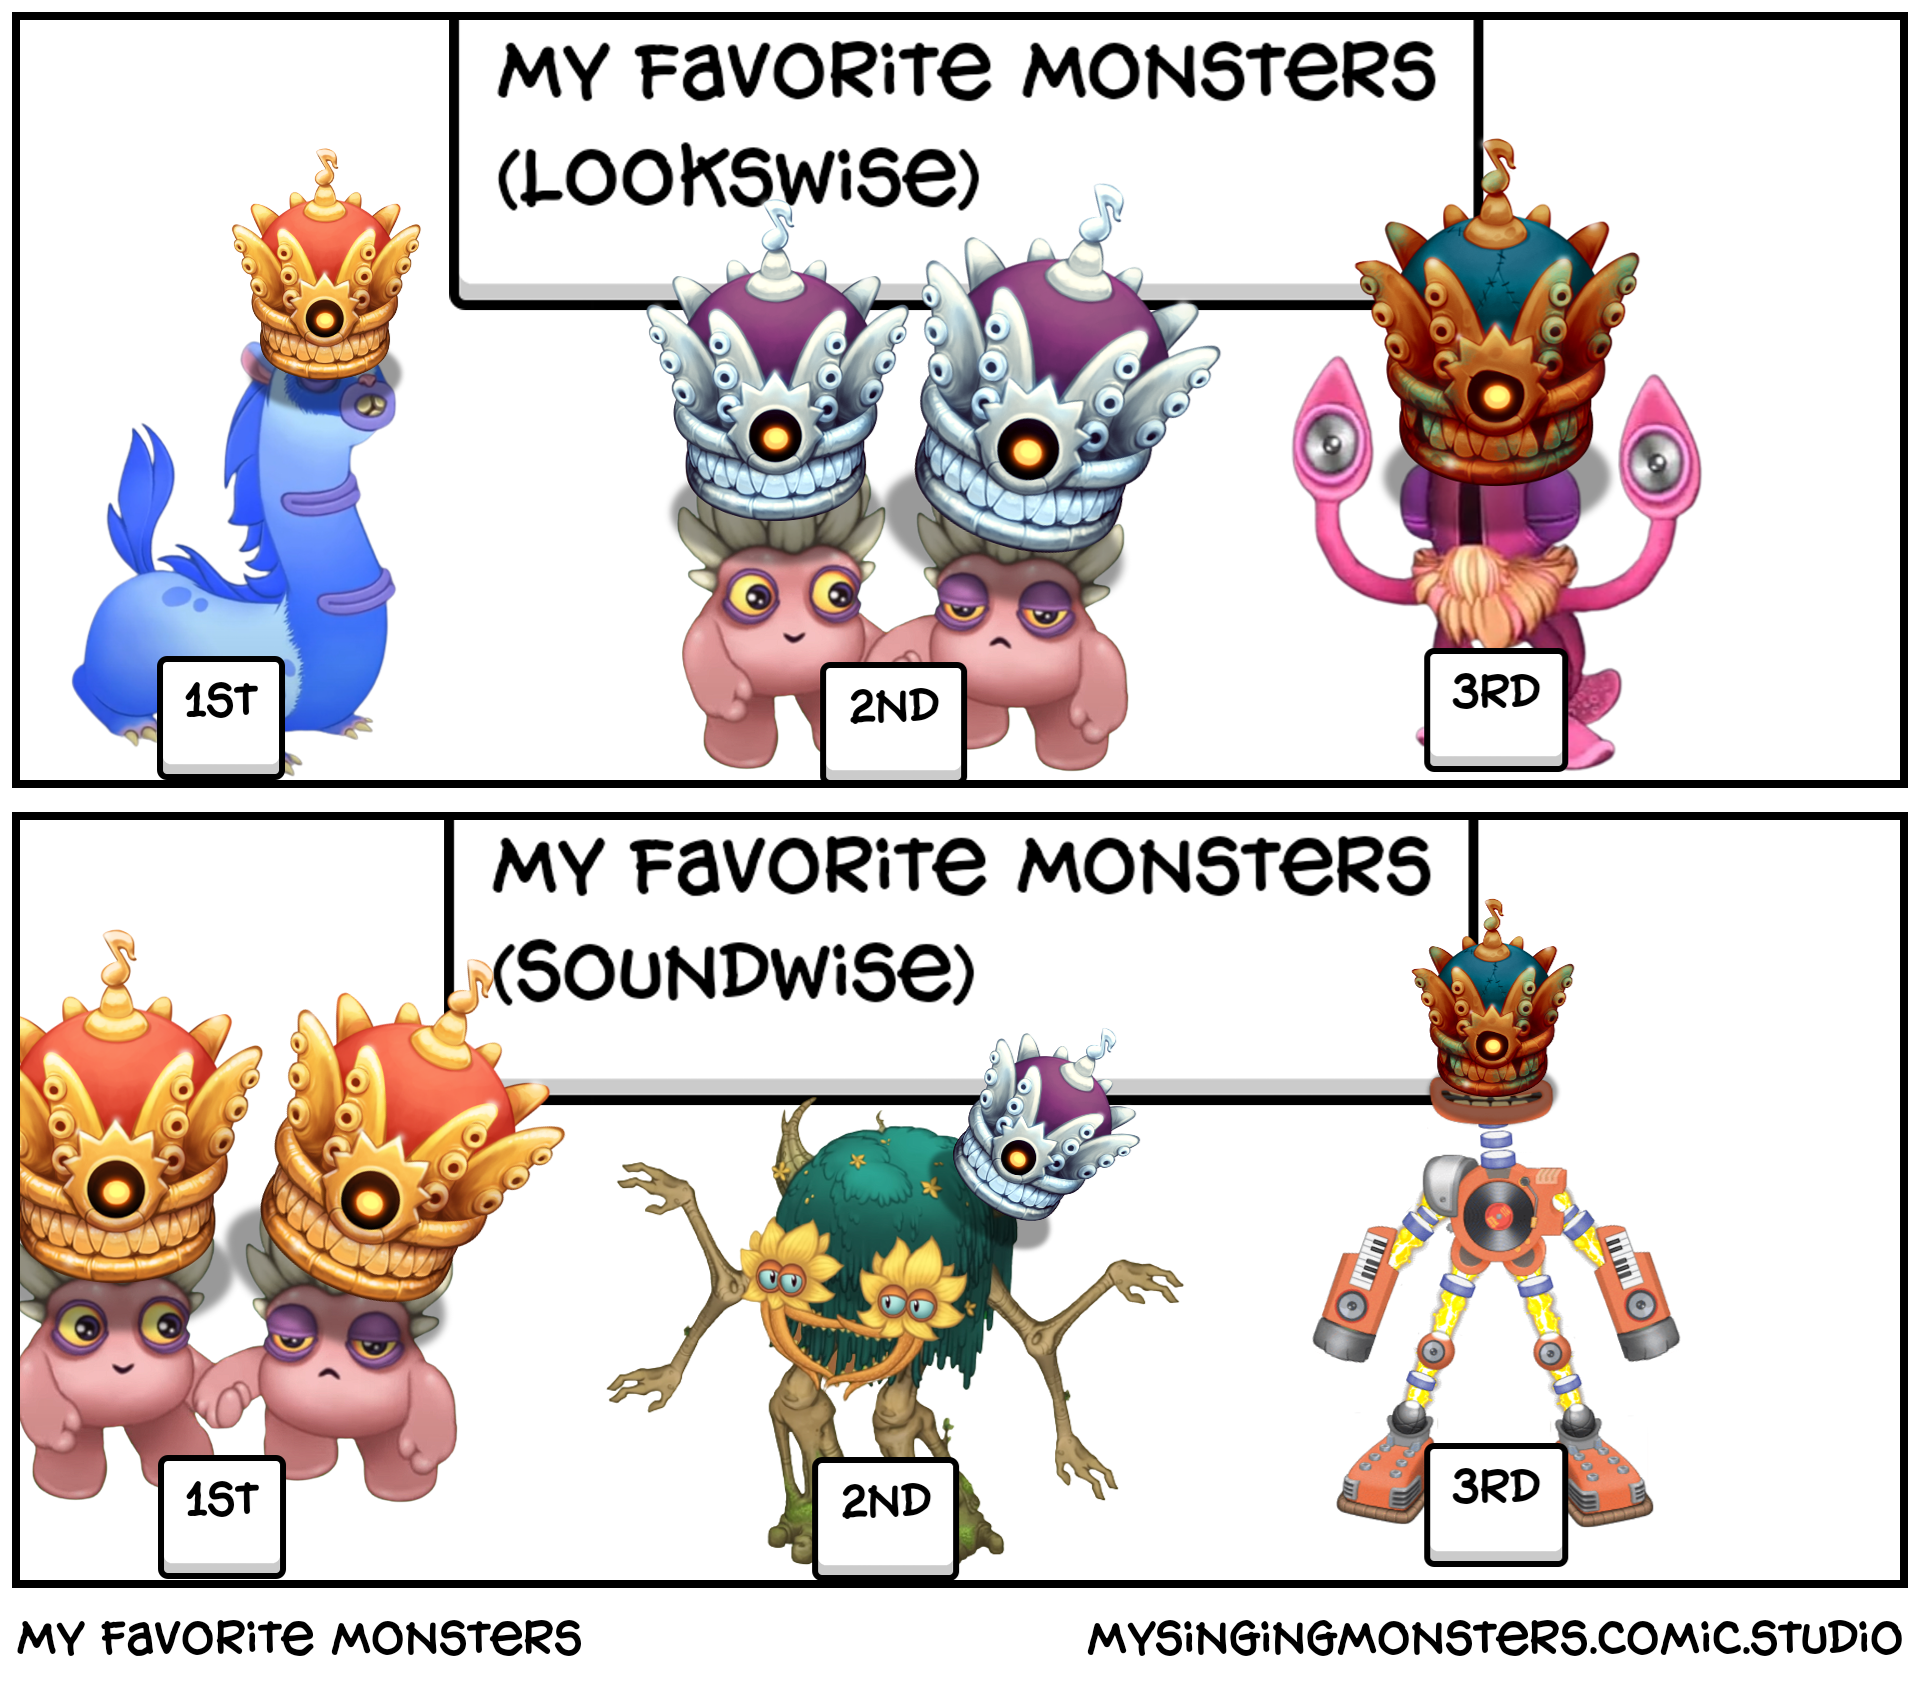 My favorite monsters